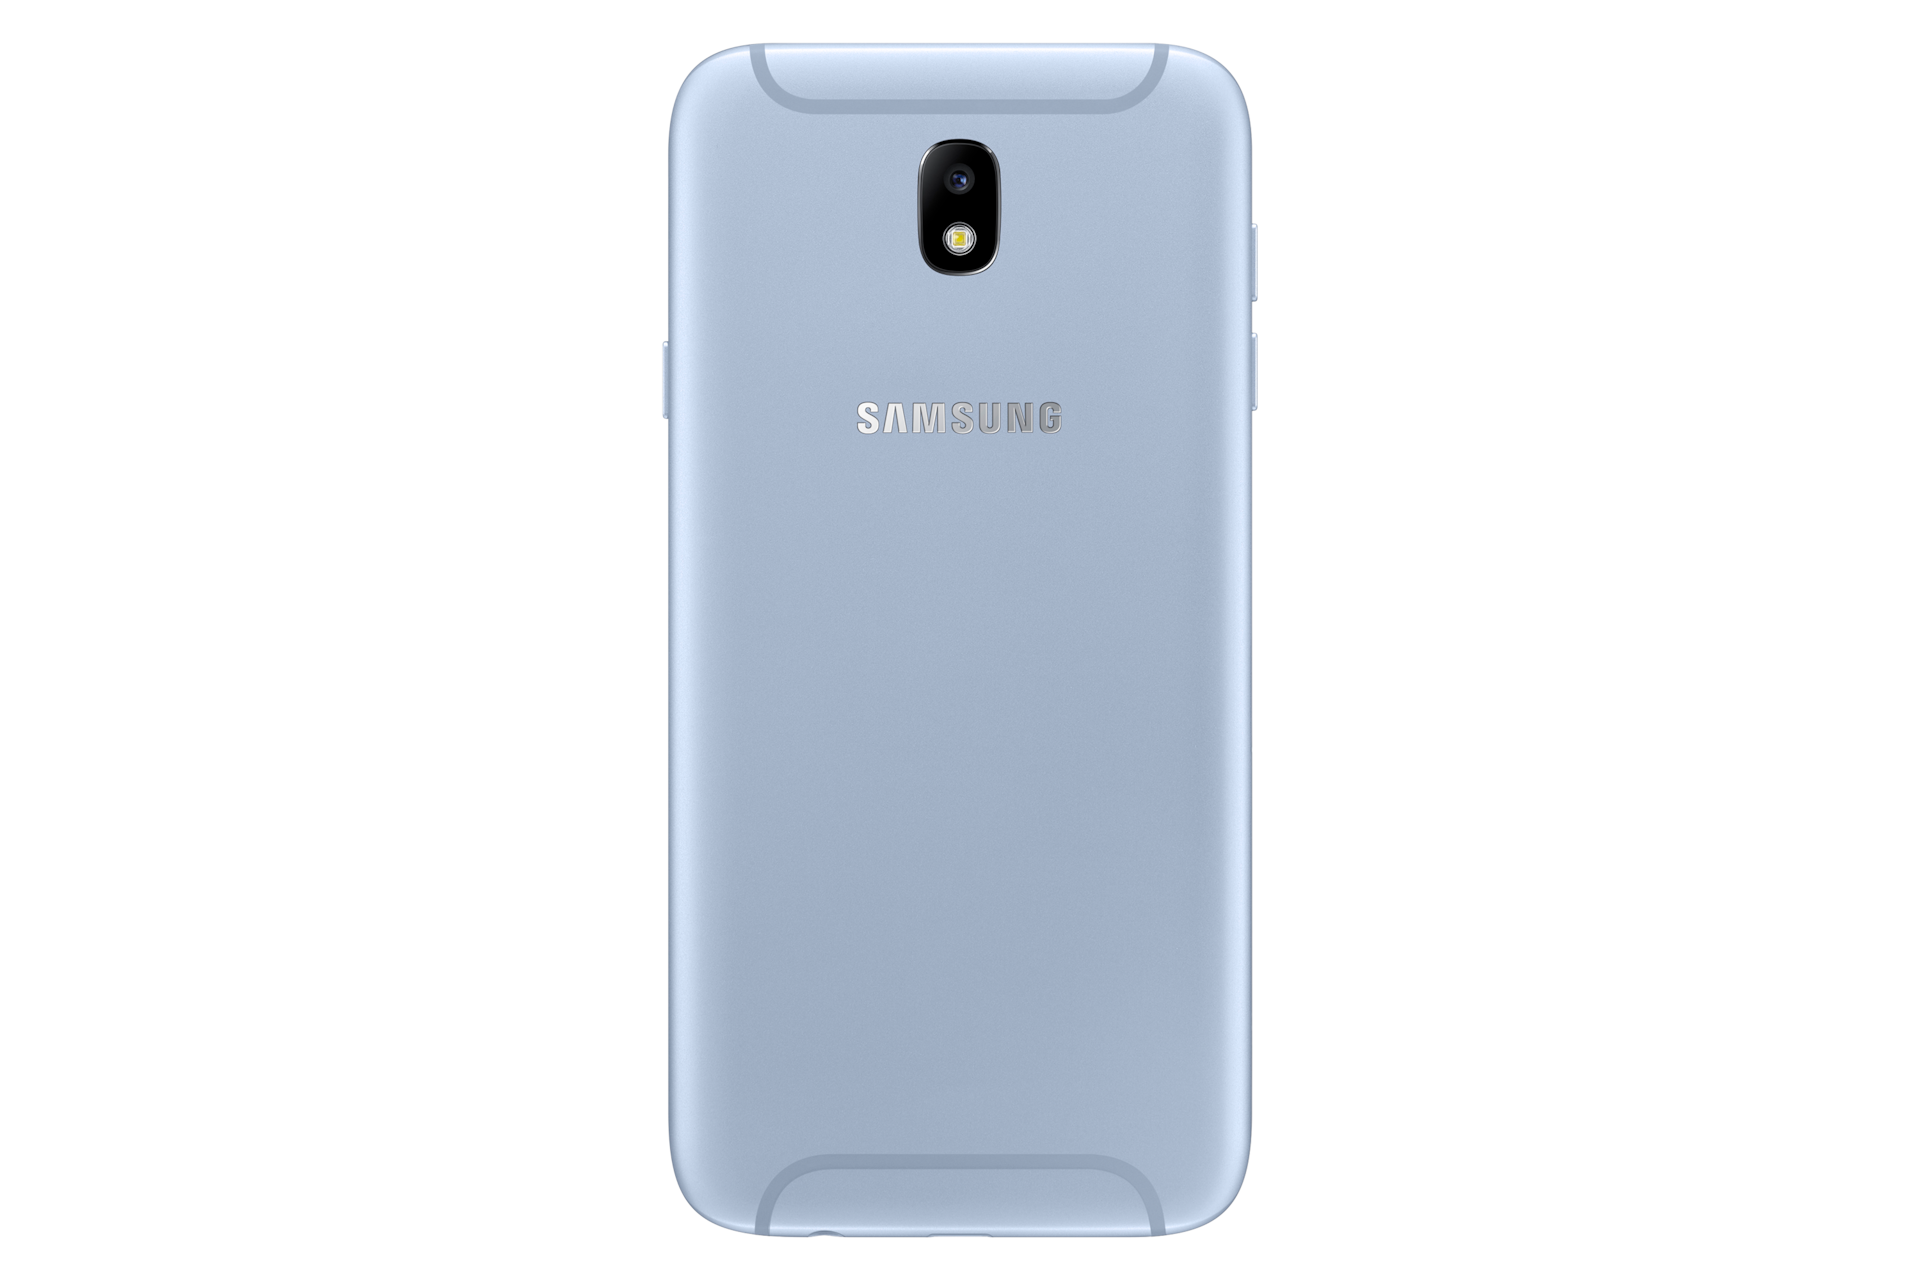 Galaxy J7 2017 bleu argenté  SMJ730F  Samsung FR